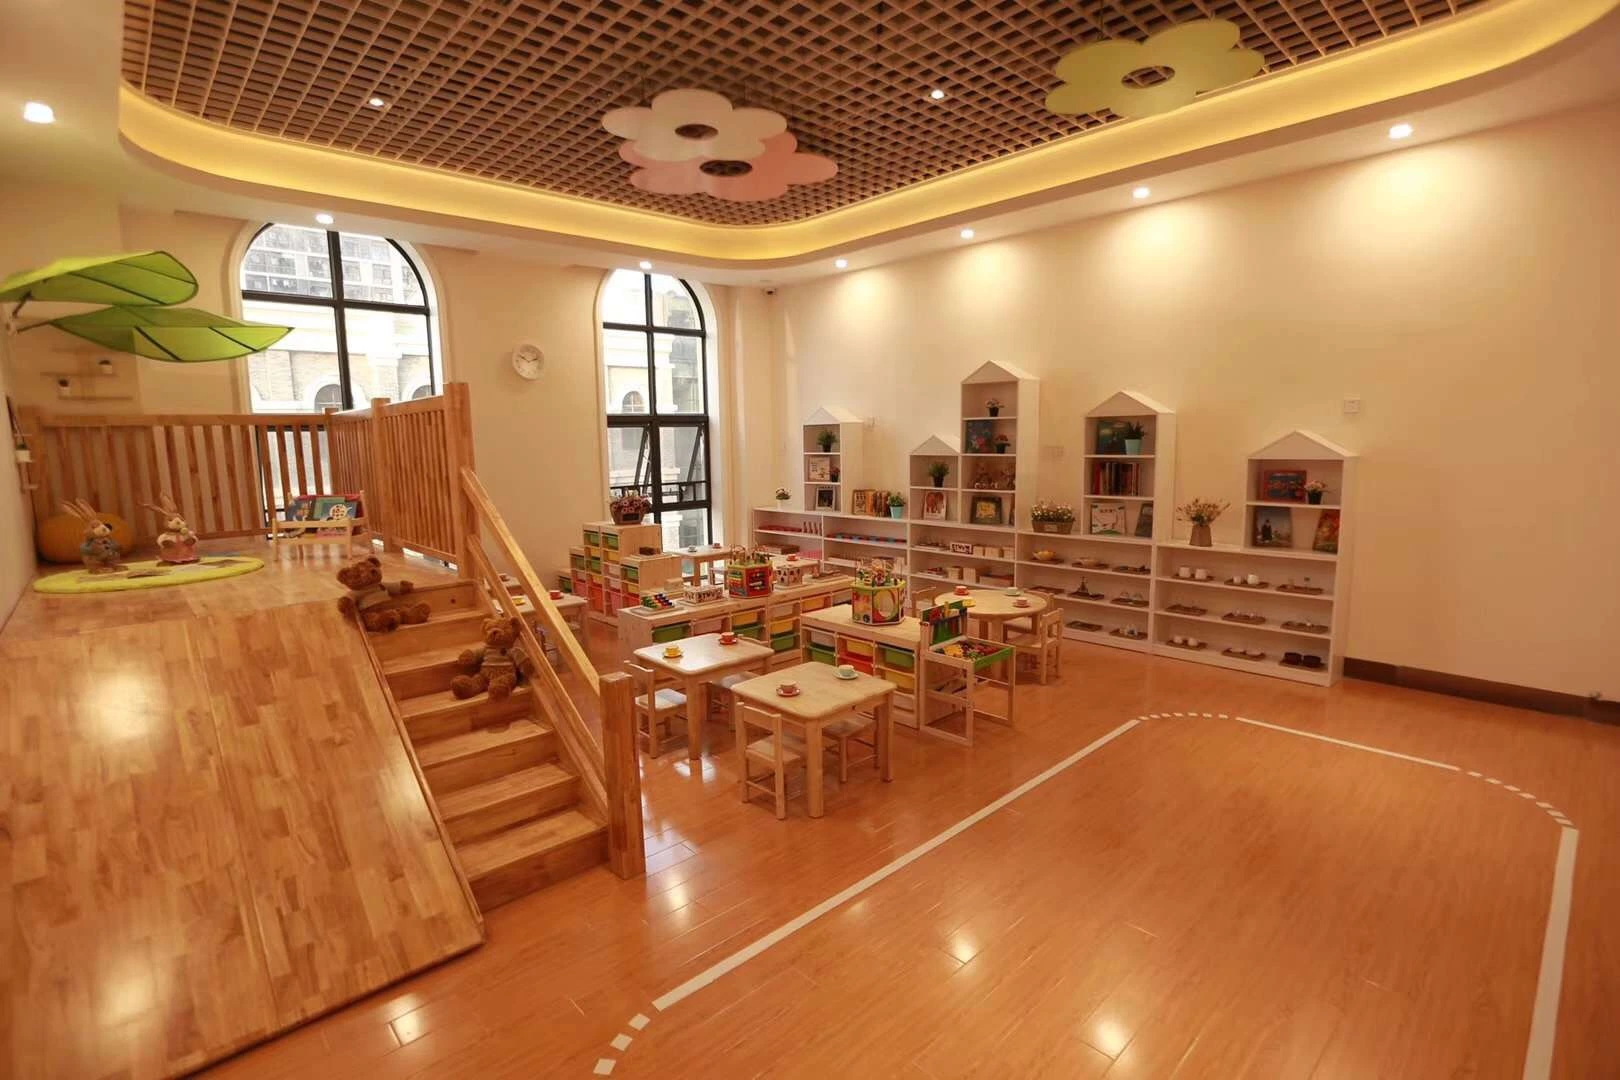 Mobiliário infantil, mobiliário para bebé, creches, mobiliário, mobiliário em madeira, mobiliário escolar das crianças